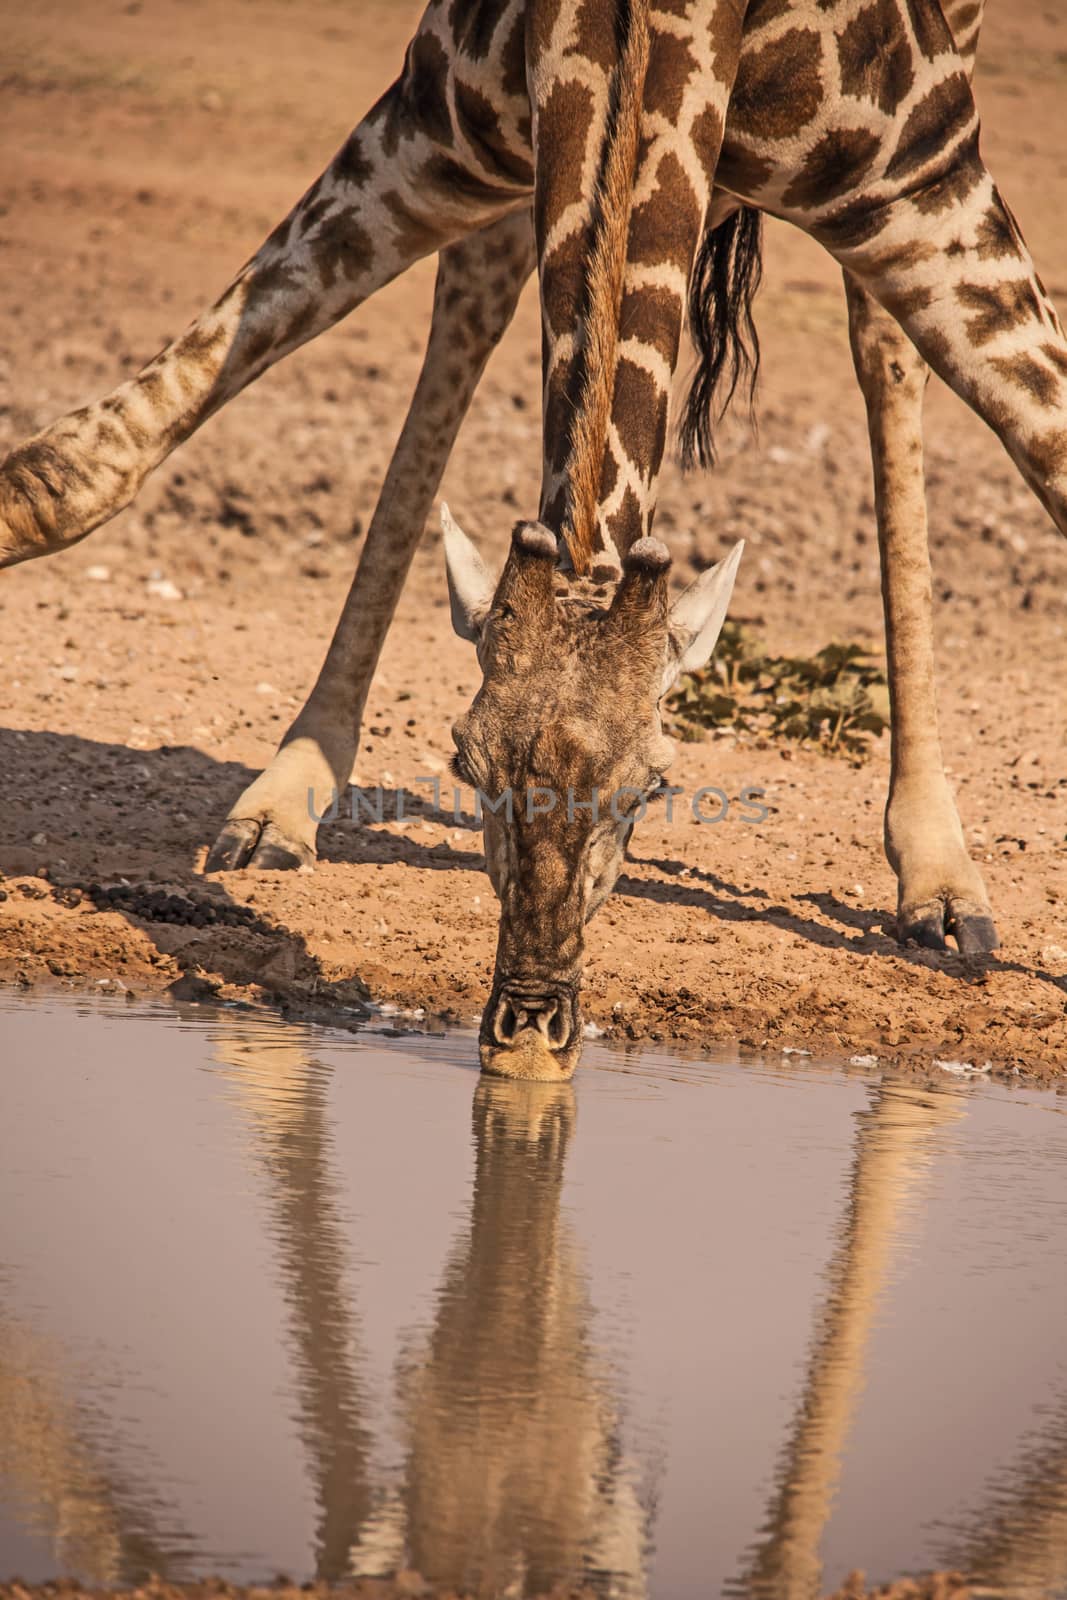 Desert Giraffe at waterhole 2 by kobus_peche